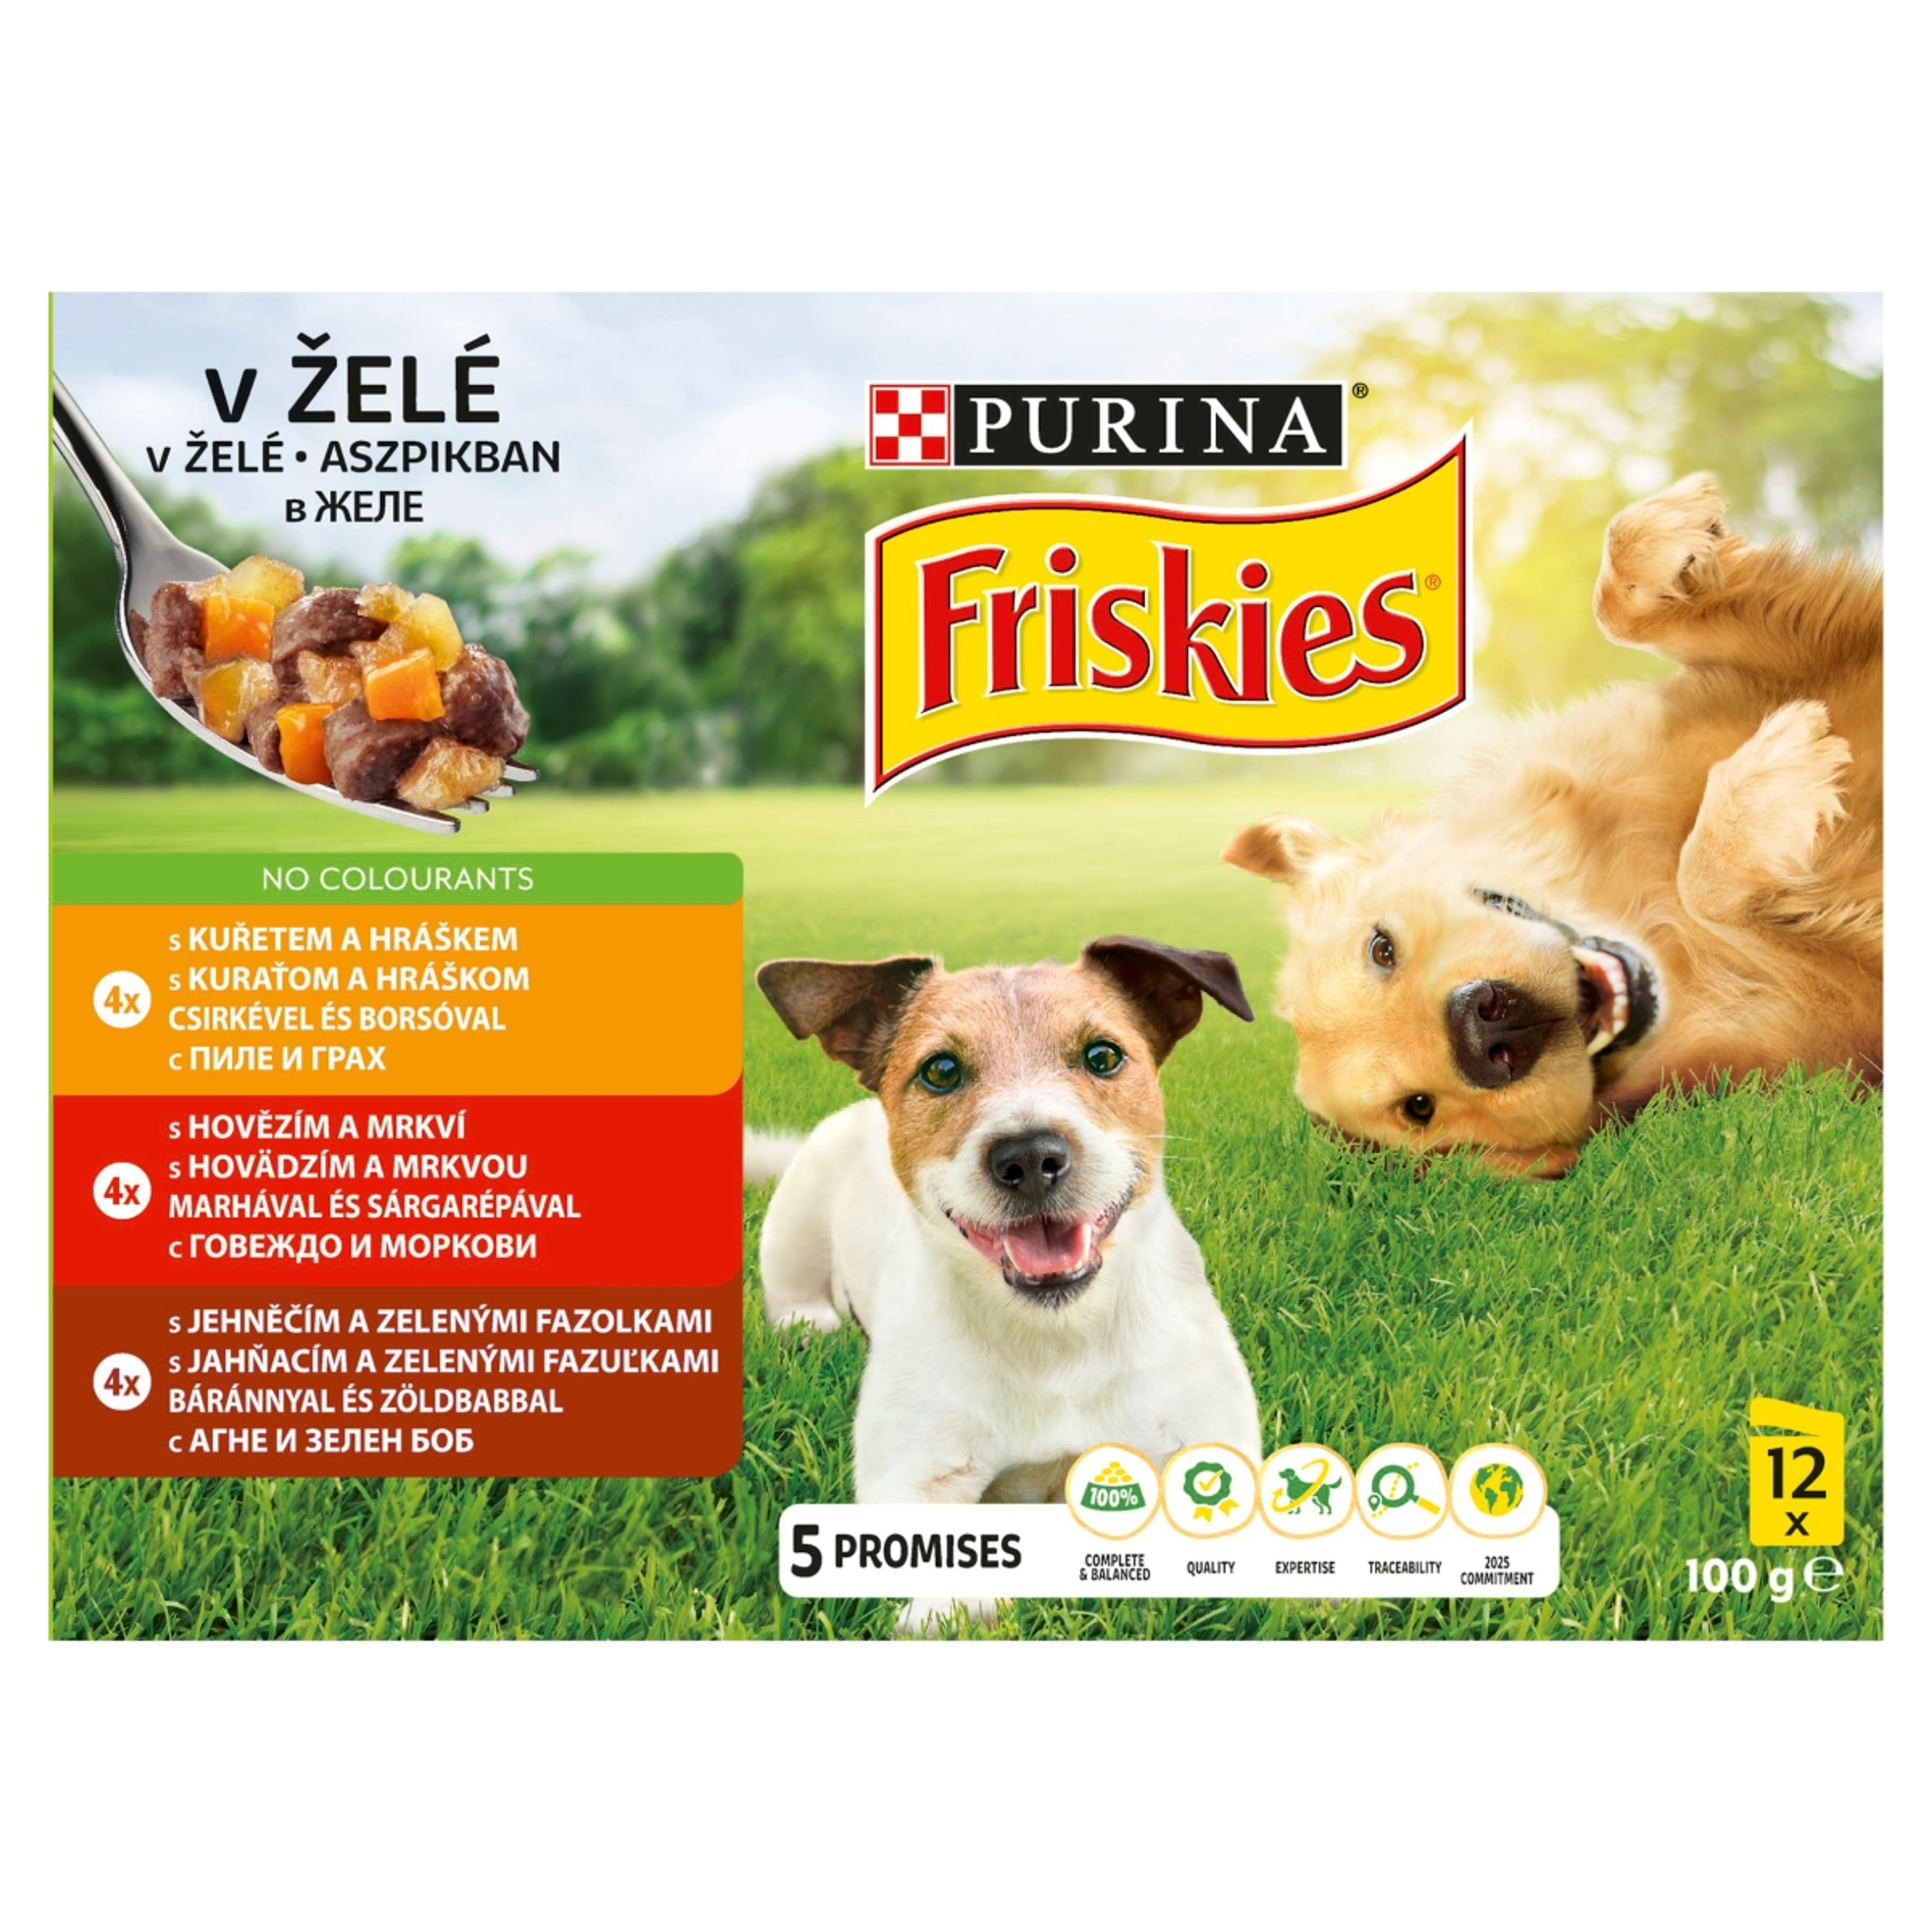 Friskies alutál kutyáknak aszpikos válogatás 12*100 g - 1200 g